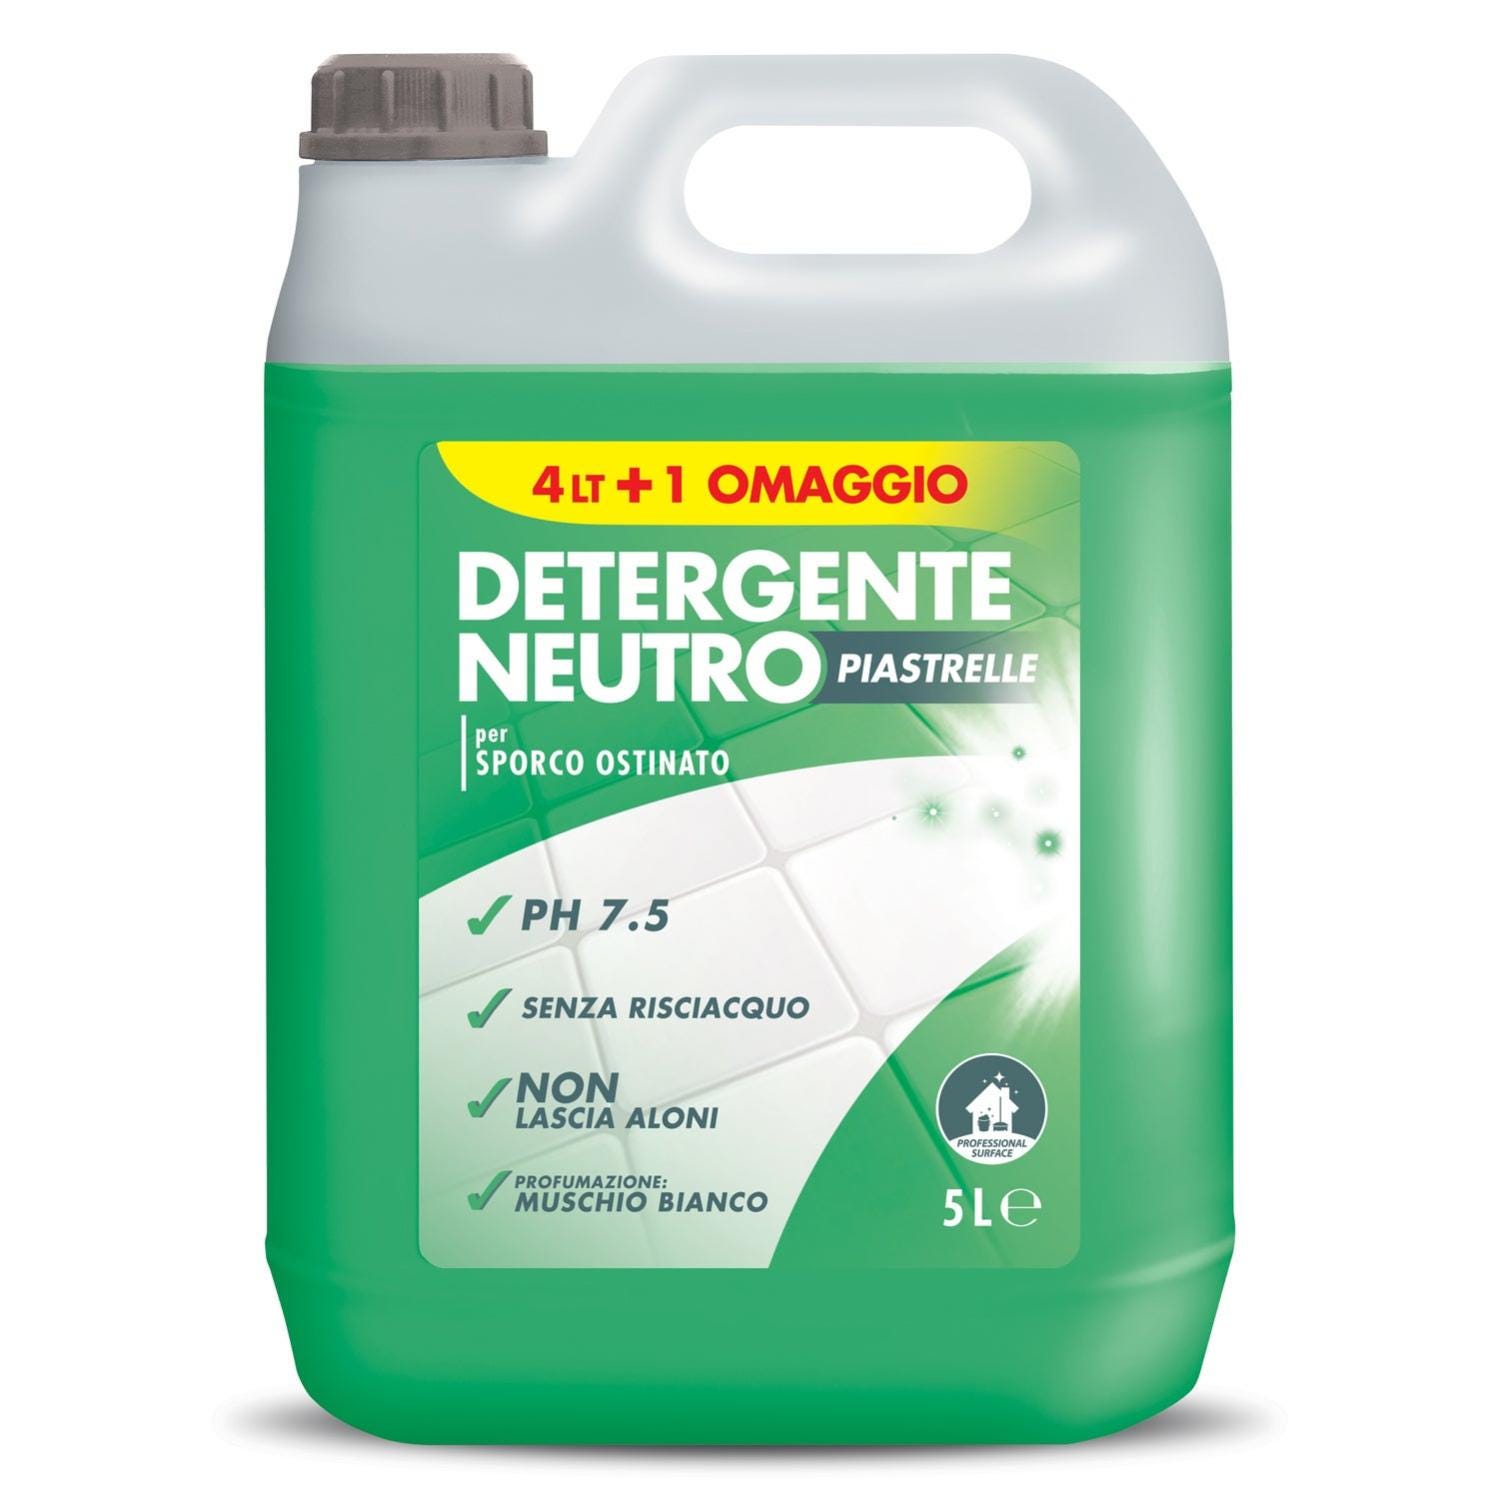 Detergente pavimenti Detergente Neutro Piastrelle 5 L